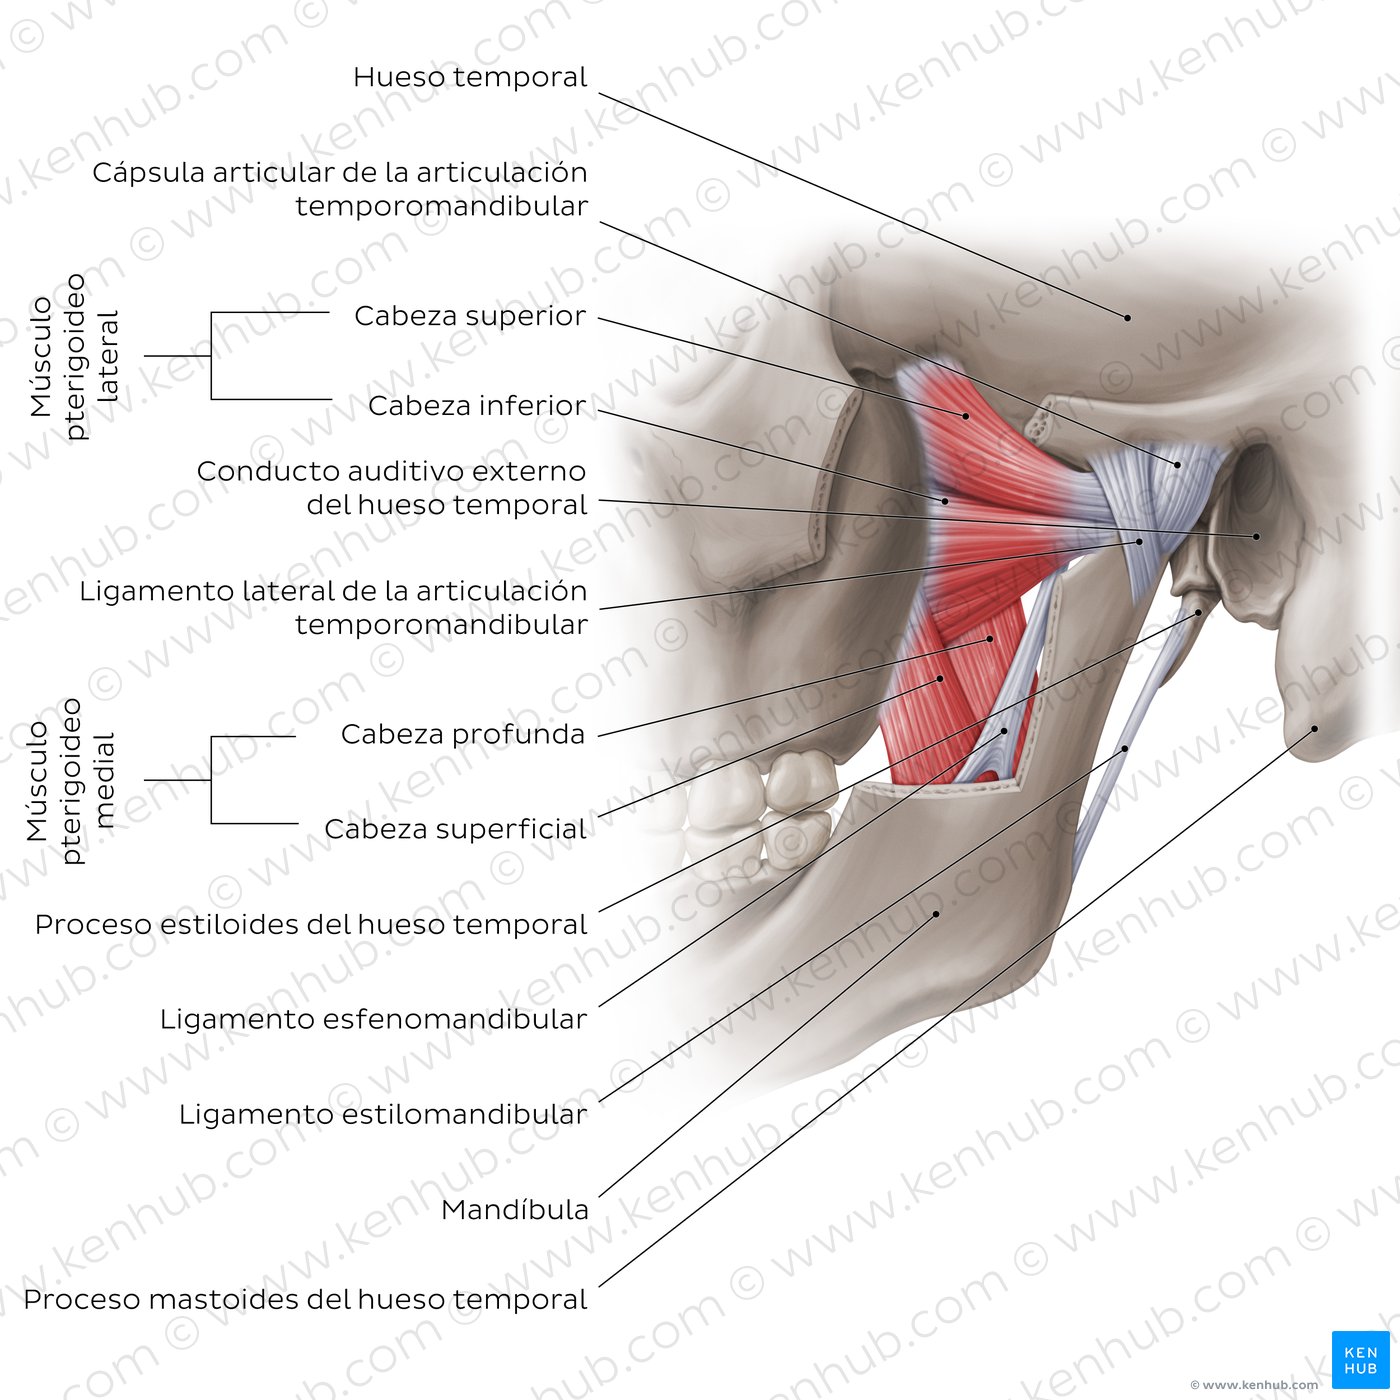 Visión general de la articulación temporomandibular